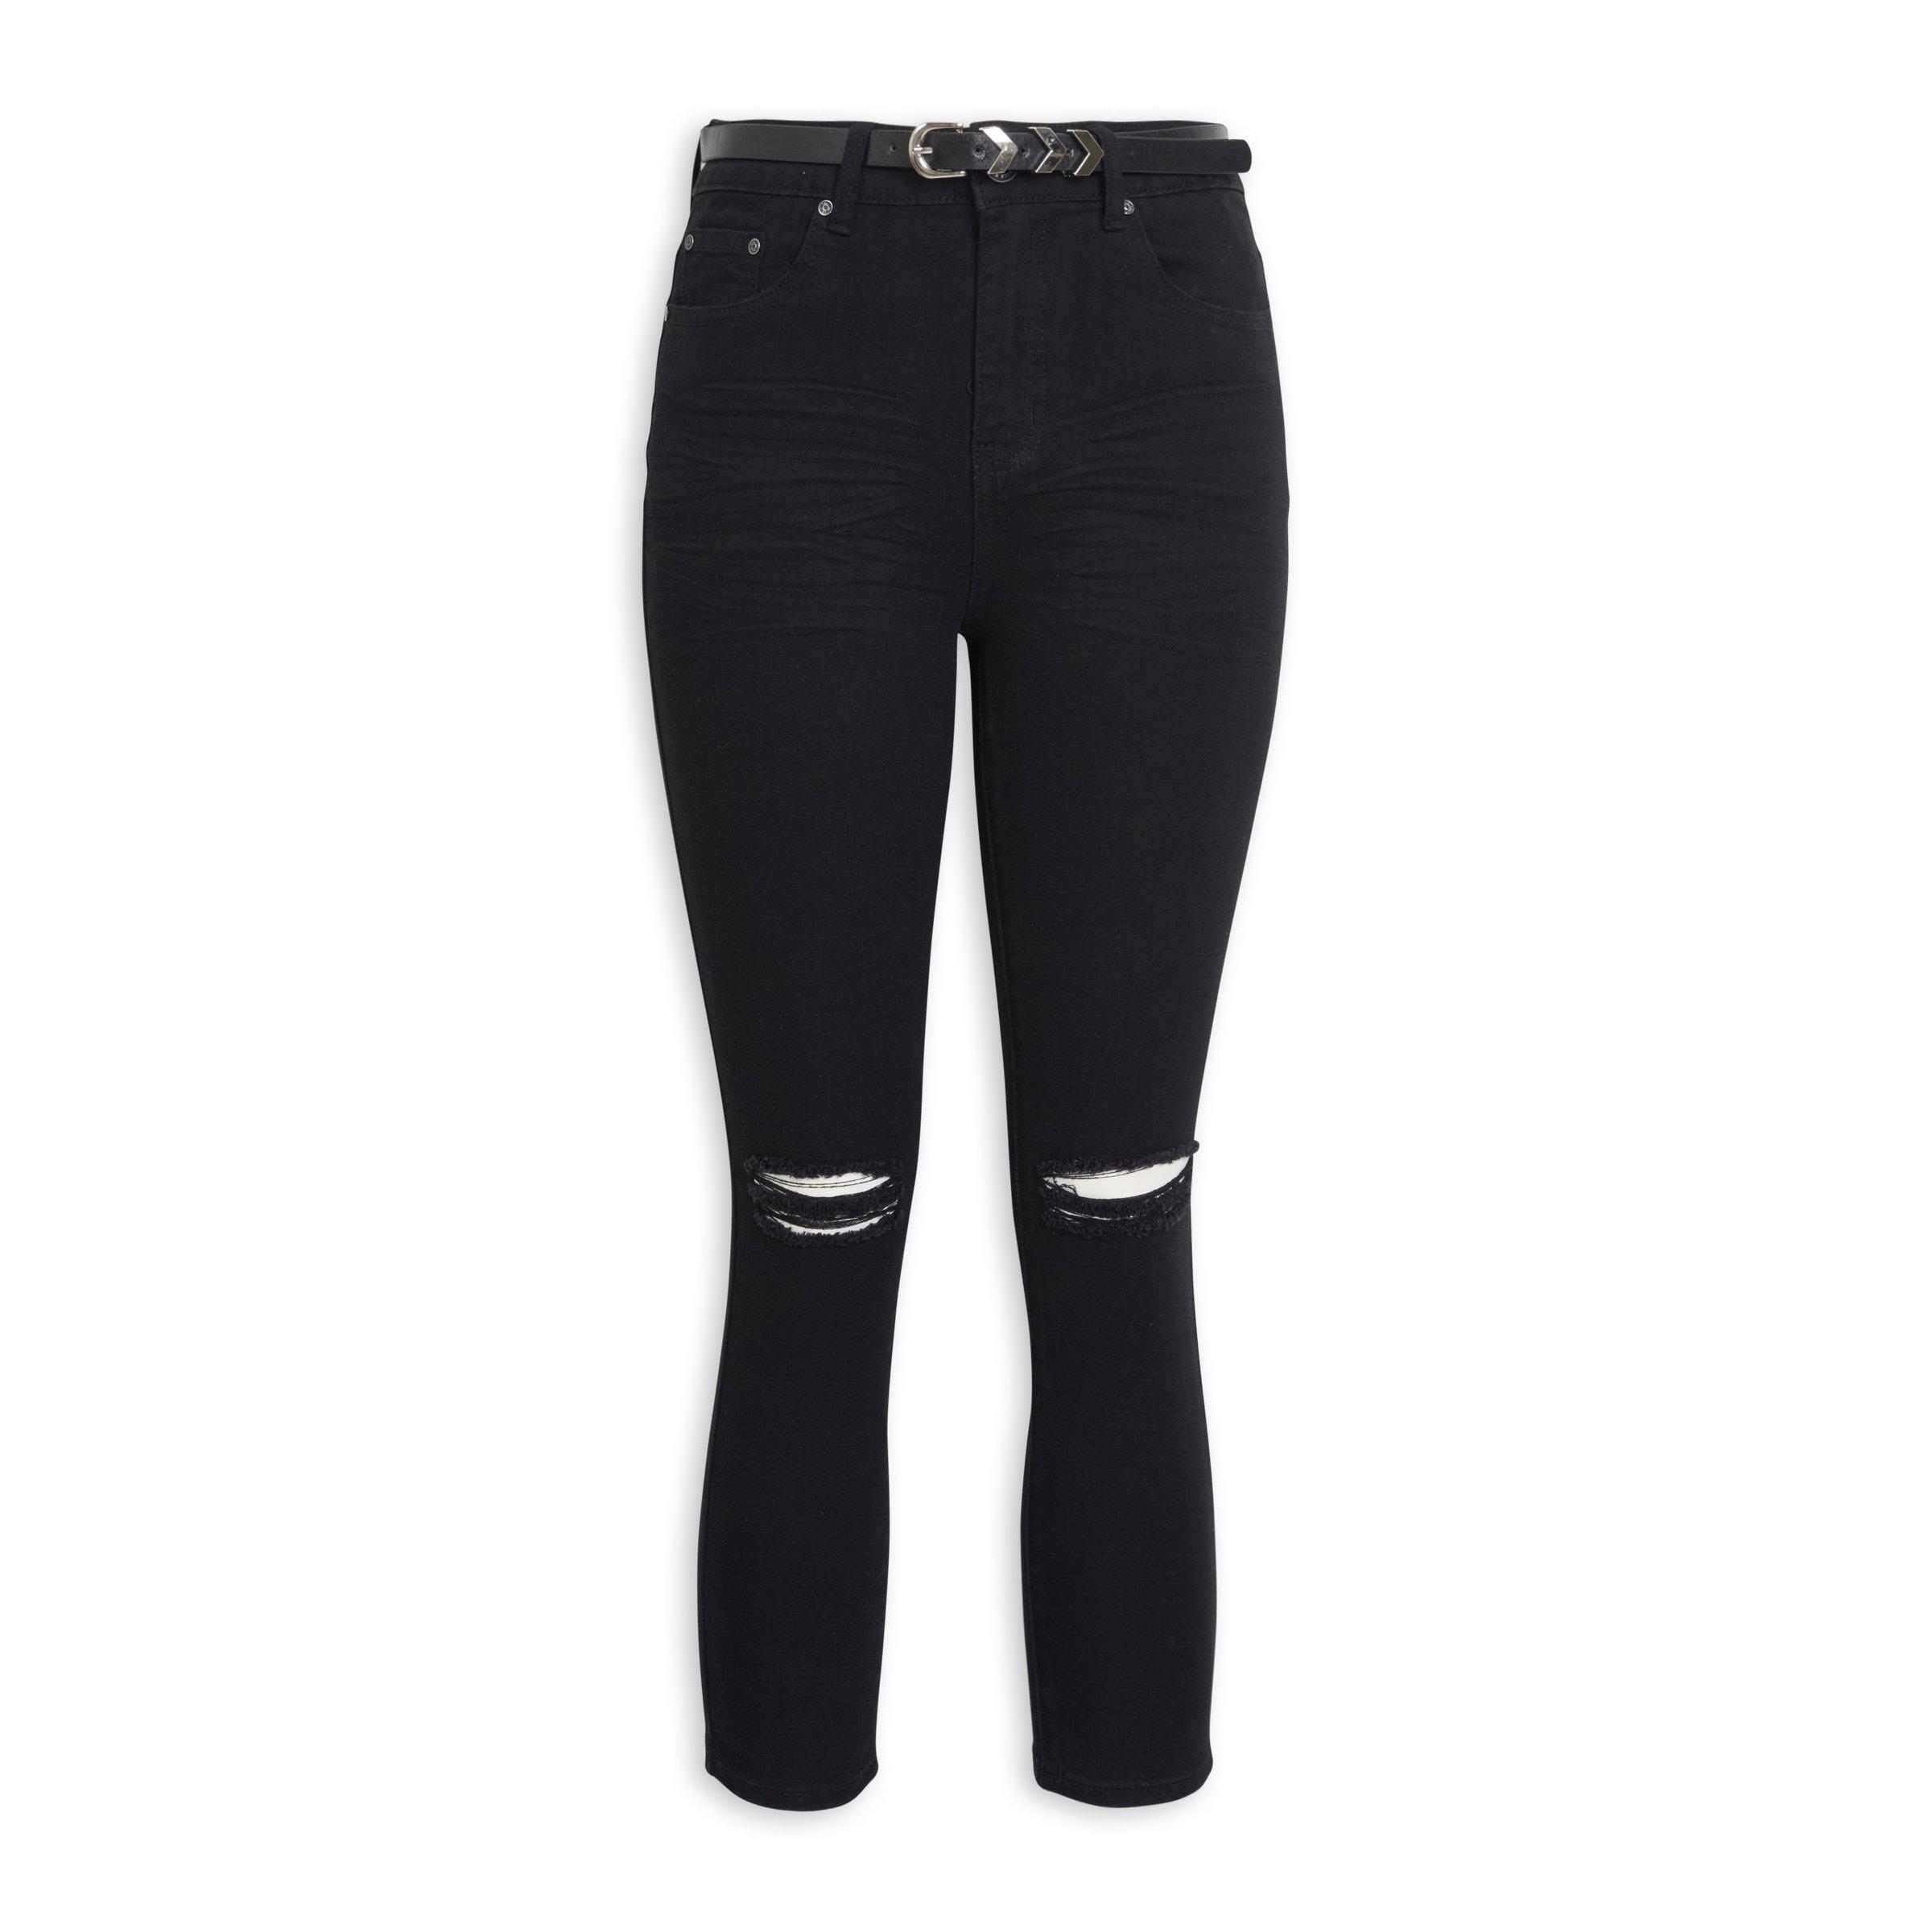 Buy OBR Black Cropped Jeans Online | Truworths